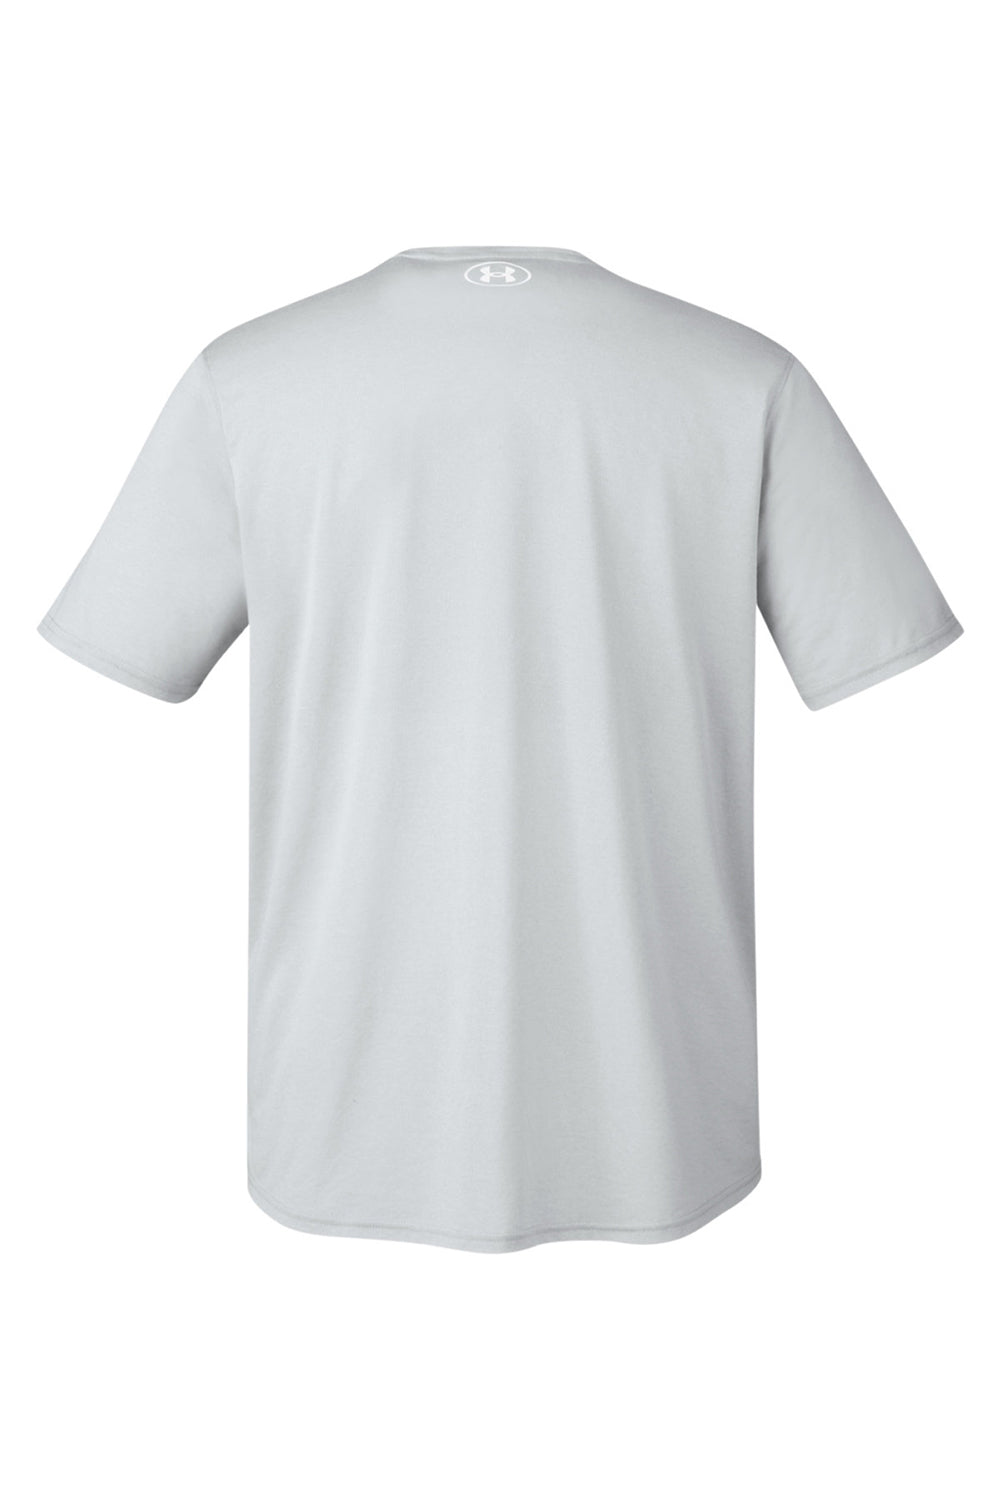 Under Armour 1376842 Mens Team Tech Moisture Wicking Short Sleeve Crewneck T-Shirt Heather Light Mod Grey Flat Back